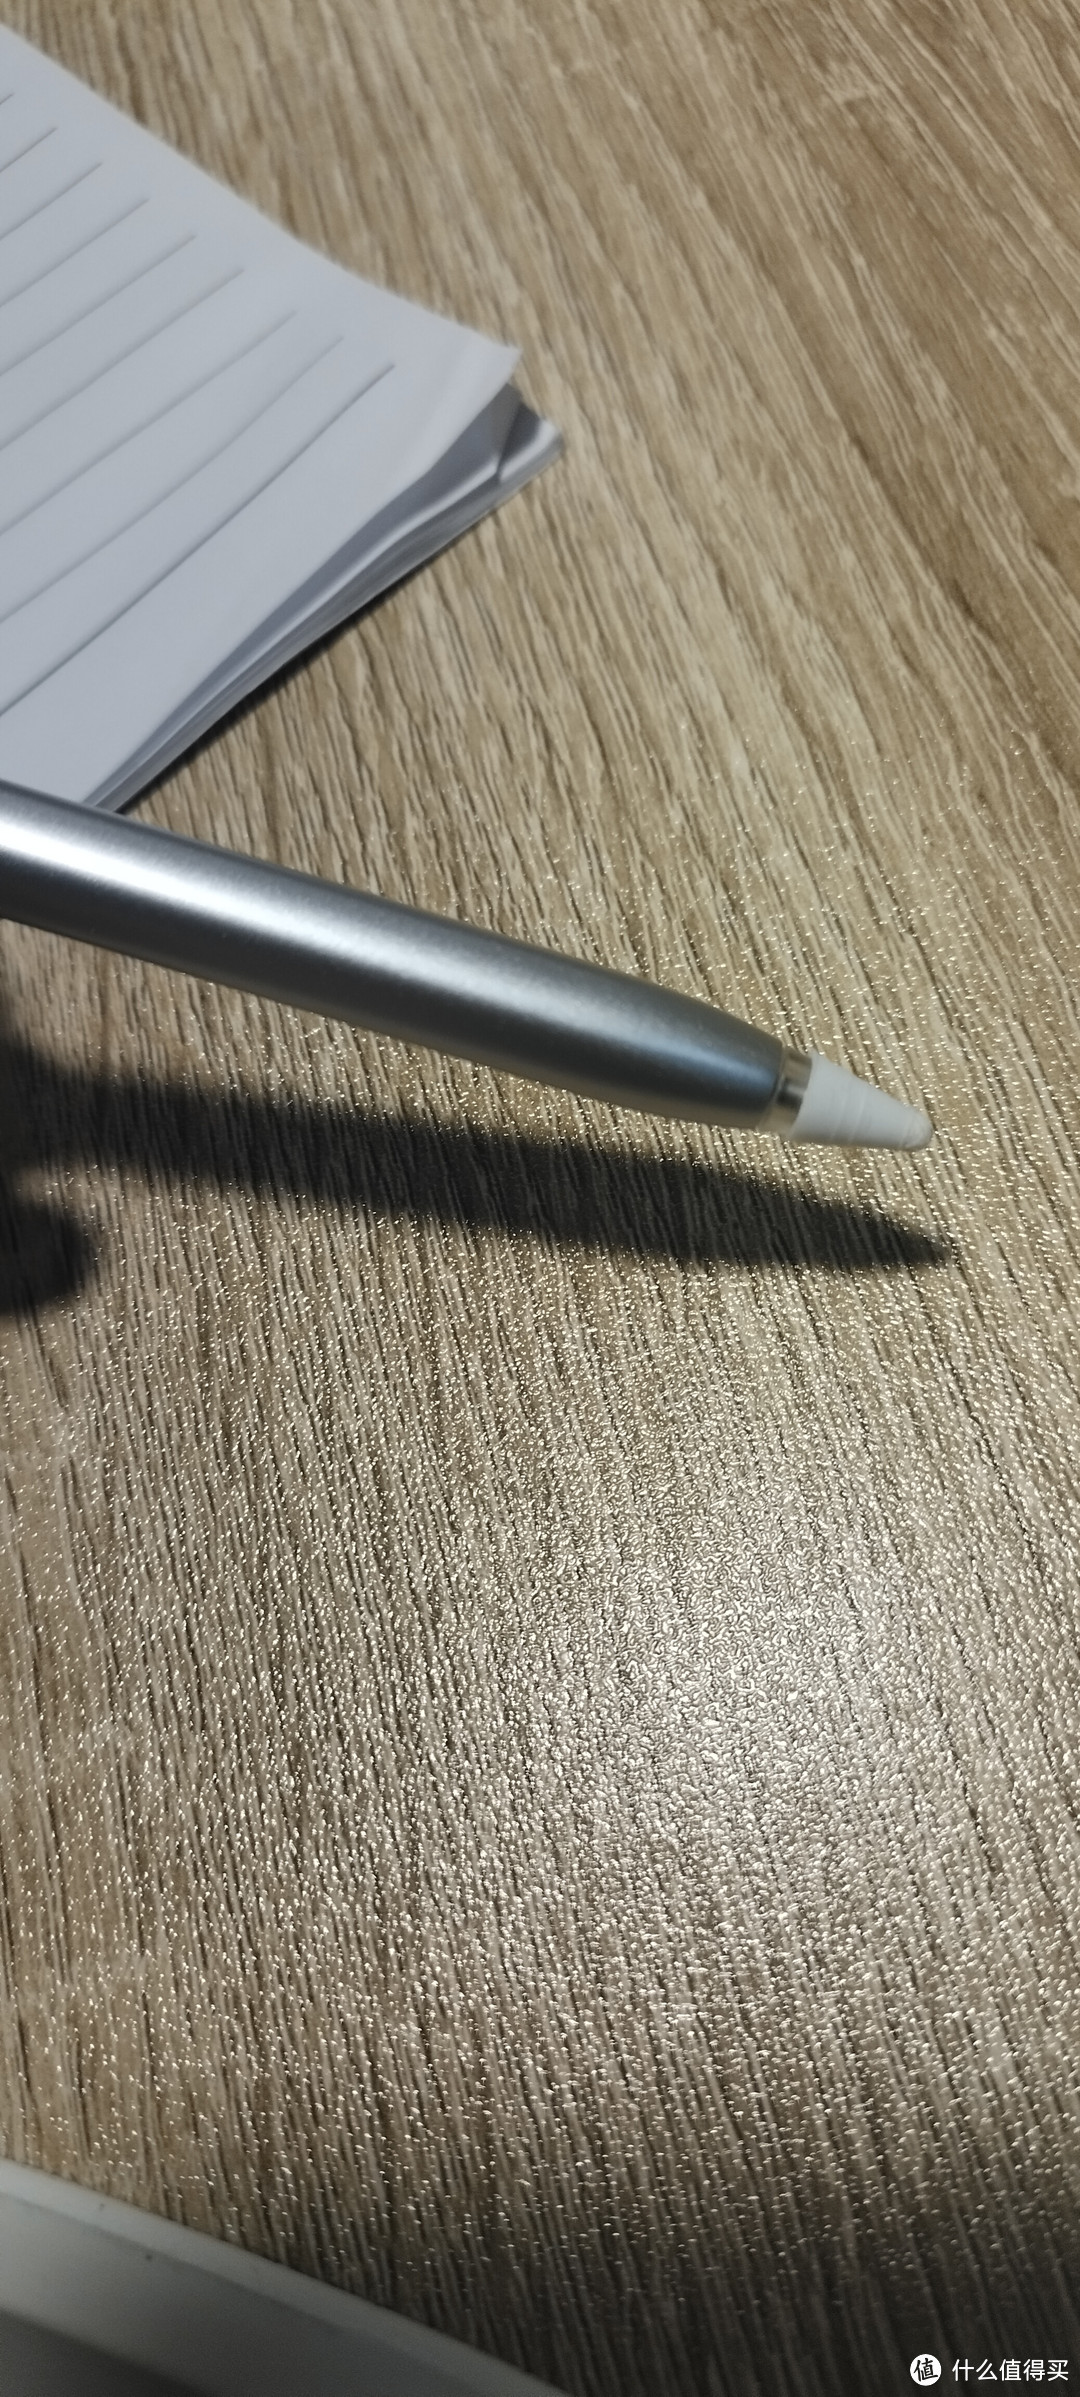 华为的M-Pencil2 第二代原装平板触屏手写流畅顺滑手感好。